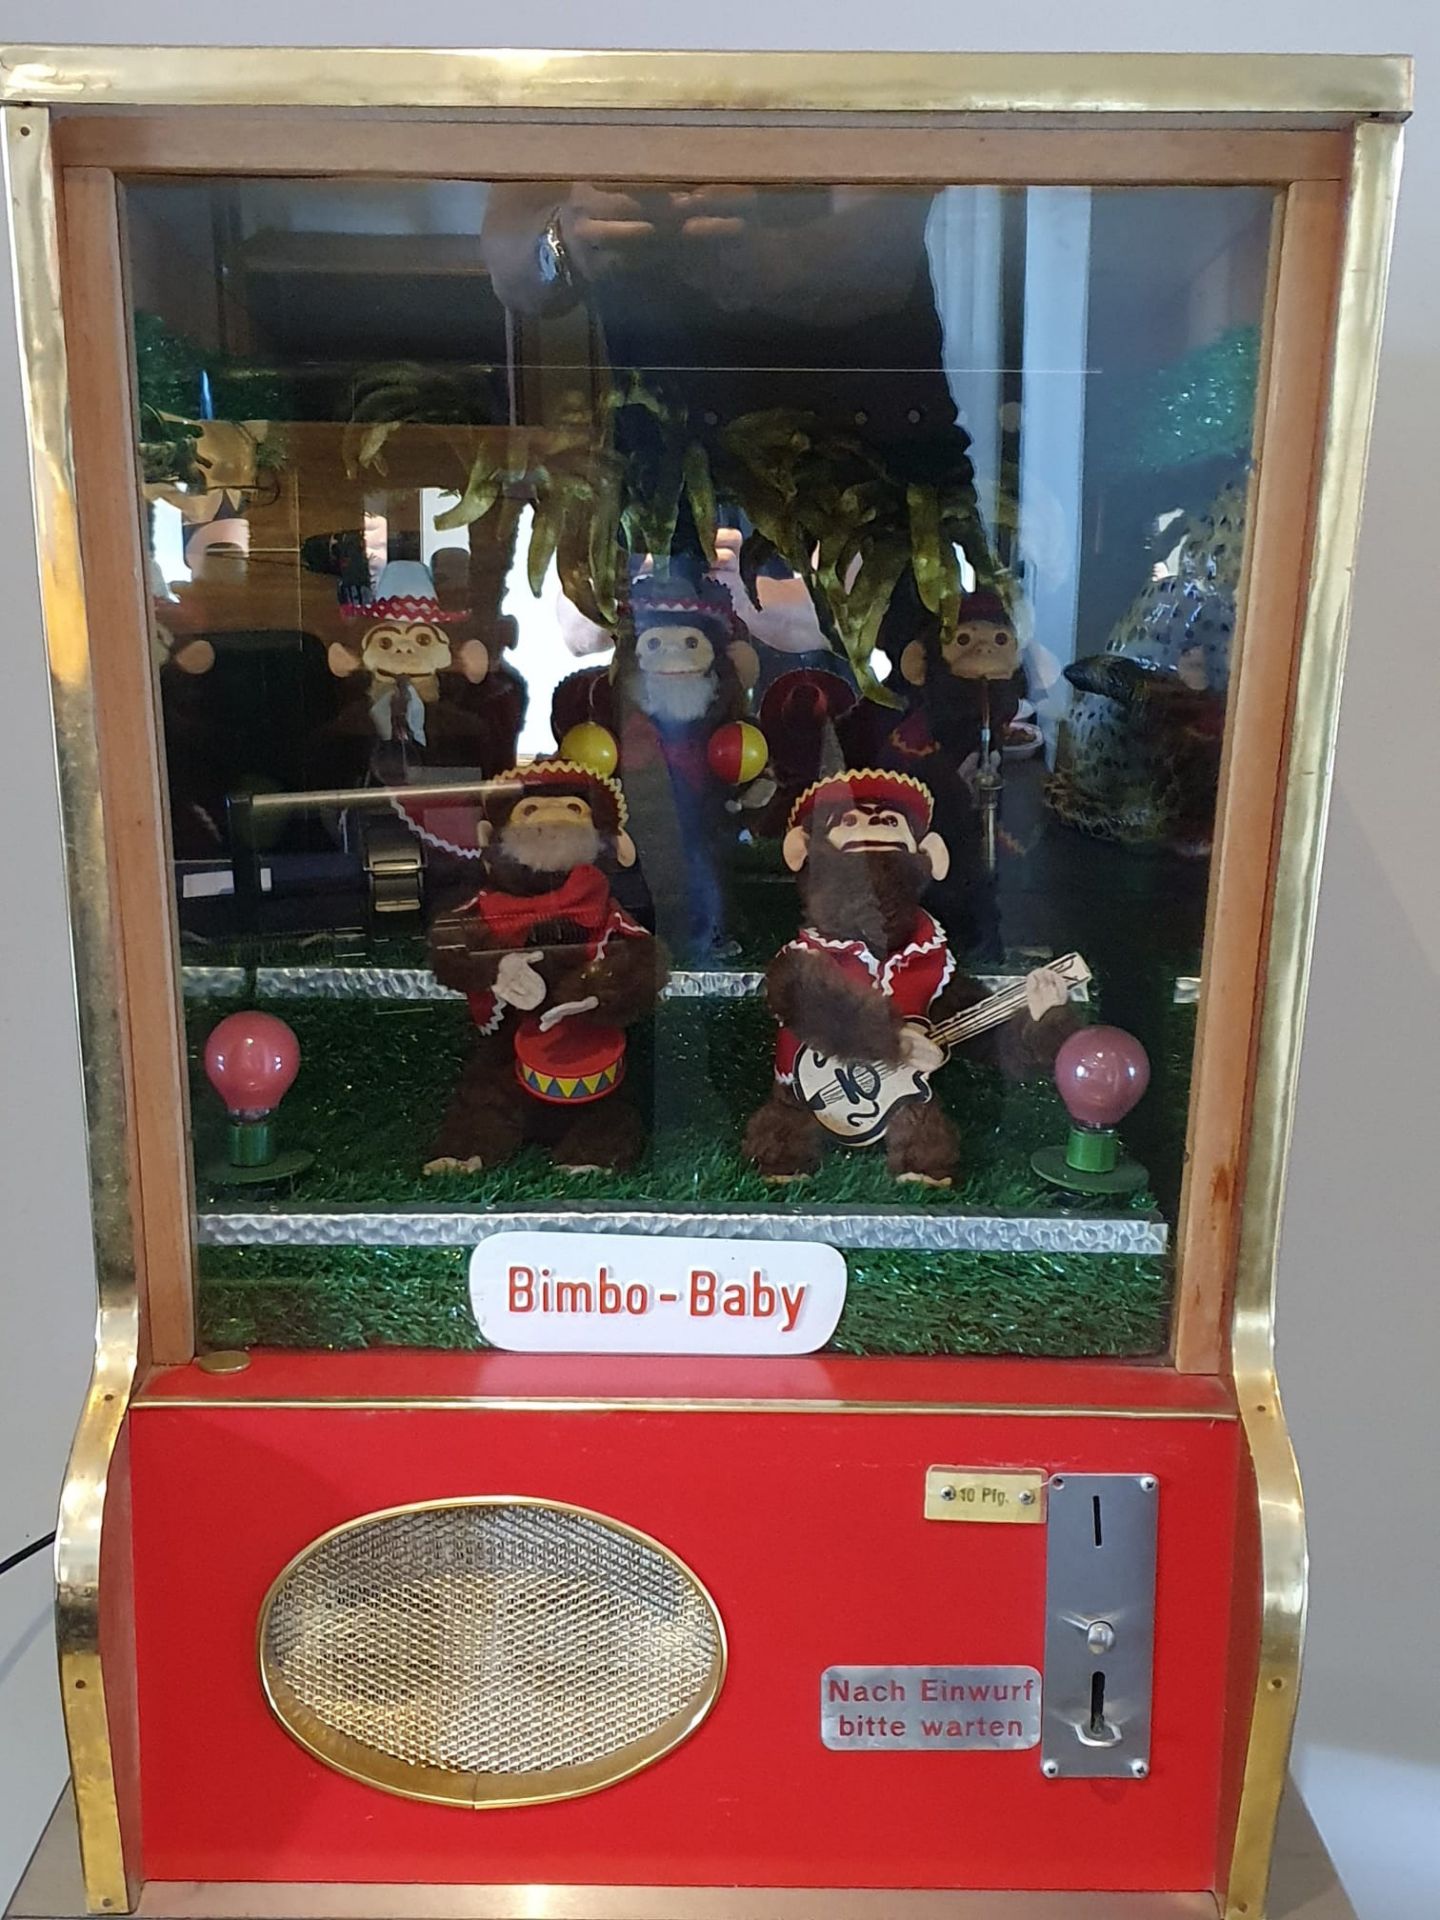 Bimbo-Baby Box with Original Monkeys